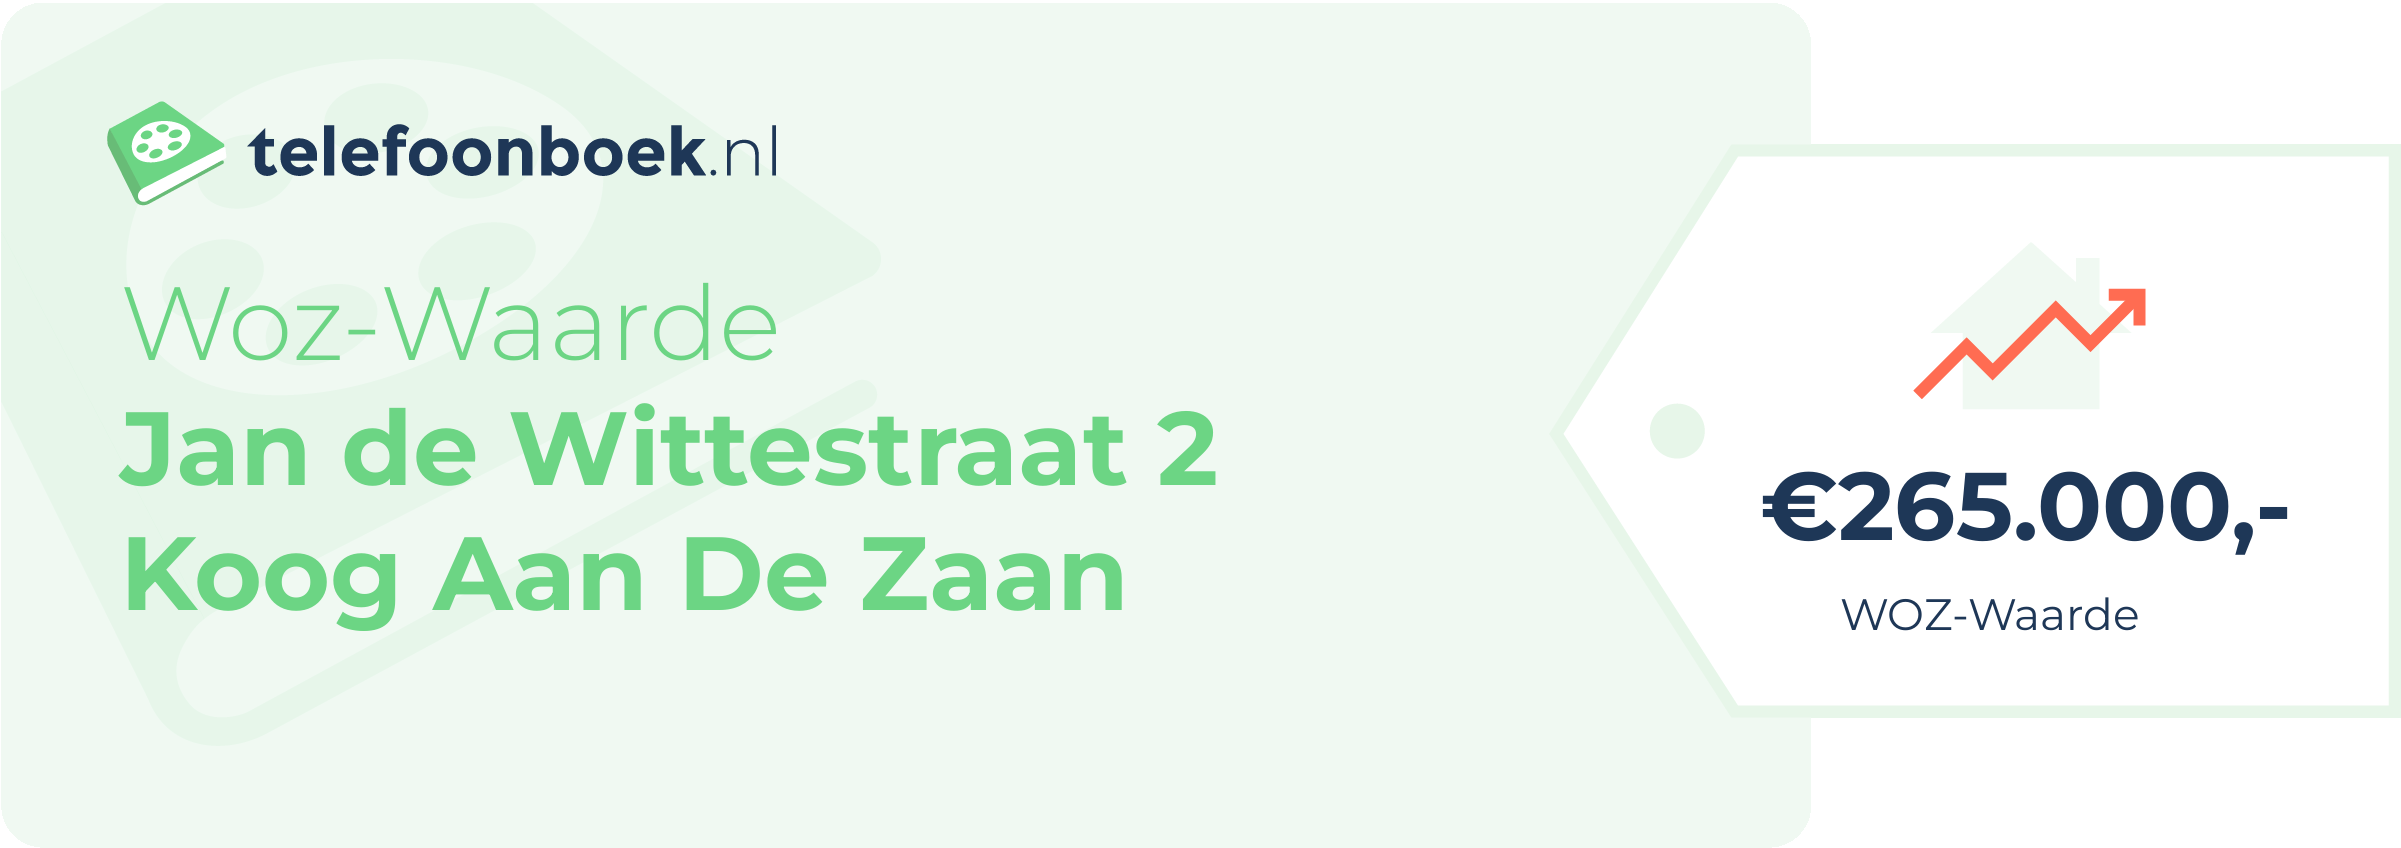 WOZ-waarde Jan De Wittestraat 2 Koog Aan De Zaan